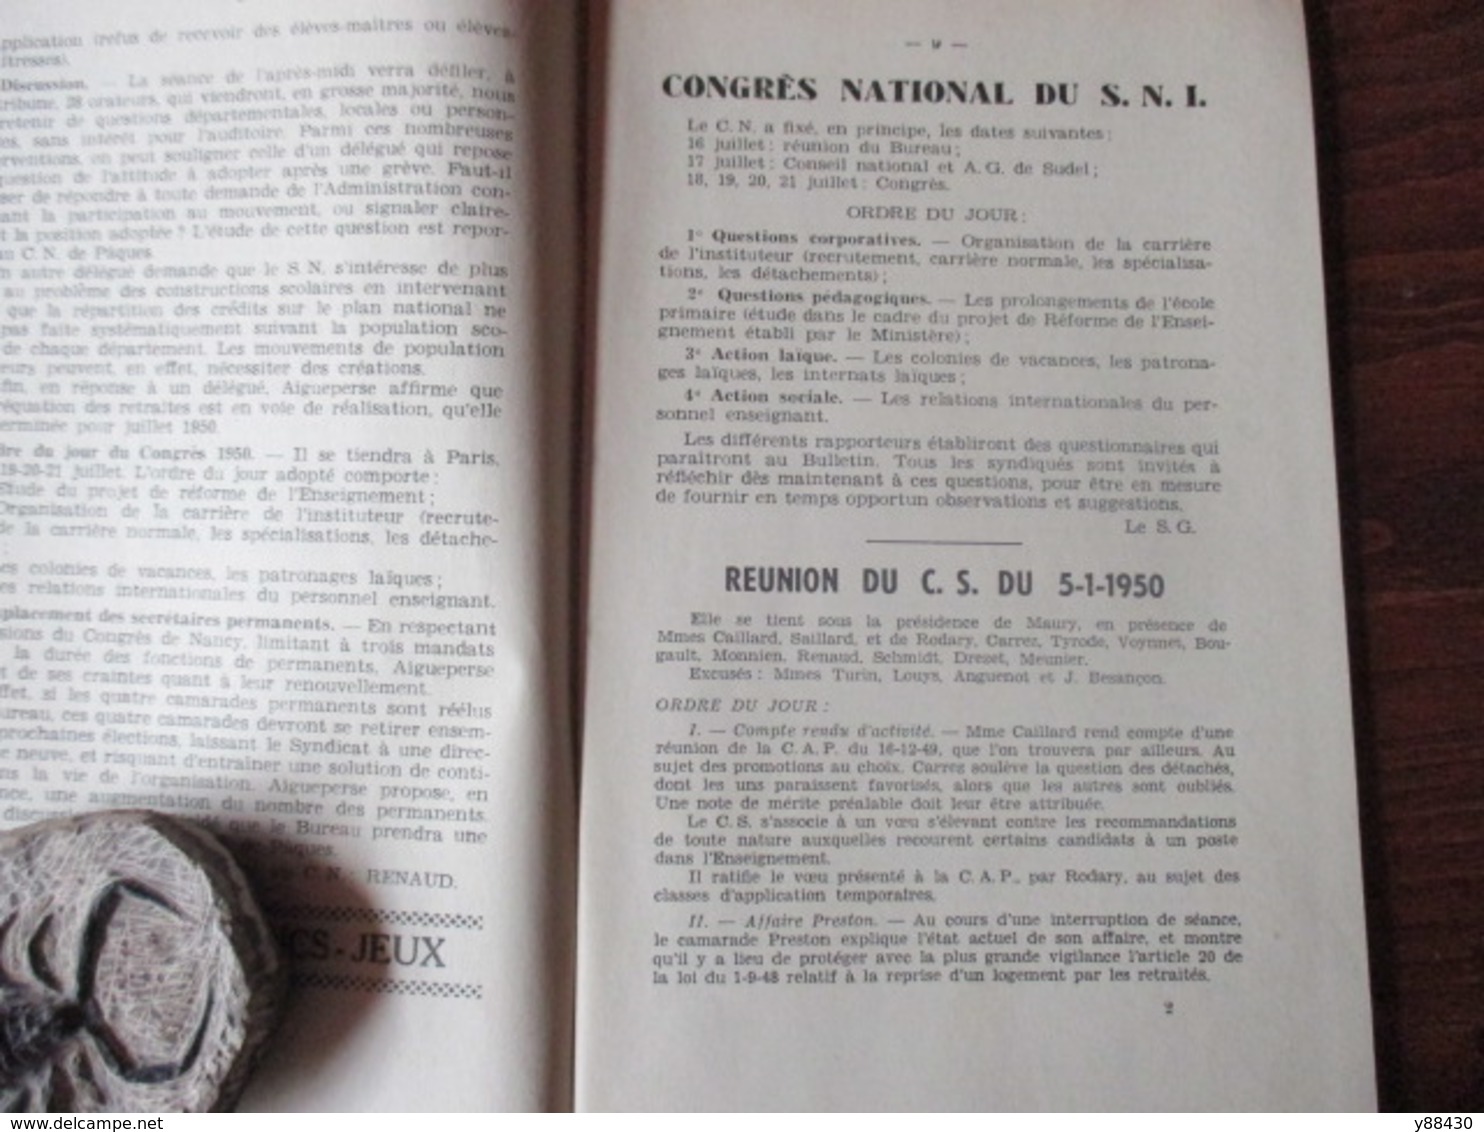 BULLETIN De La Fédération De L'Education Nationale Du DOUBS à BESANCON - Année 1950 . N°3 - 84 Pages -24 Scan - Lesekarten